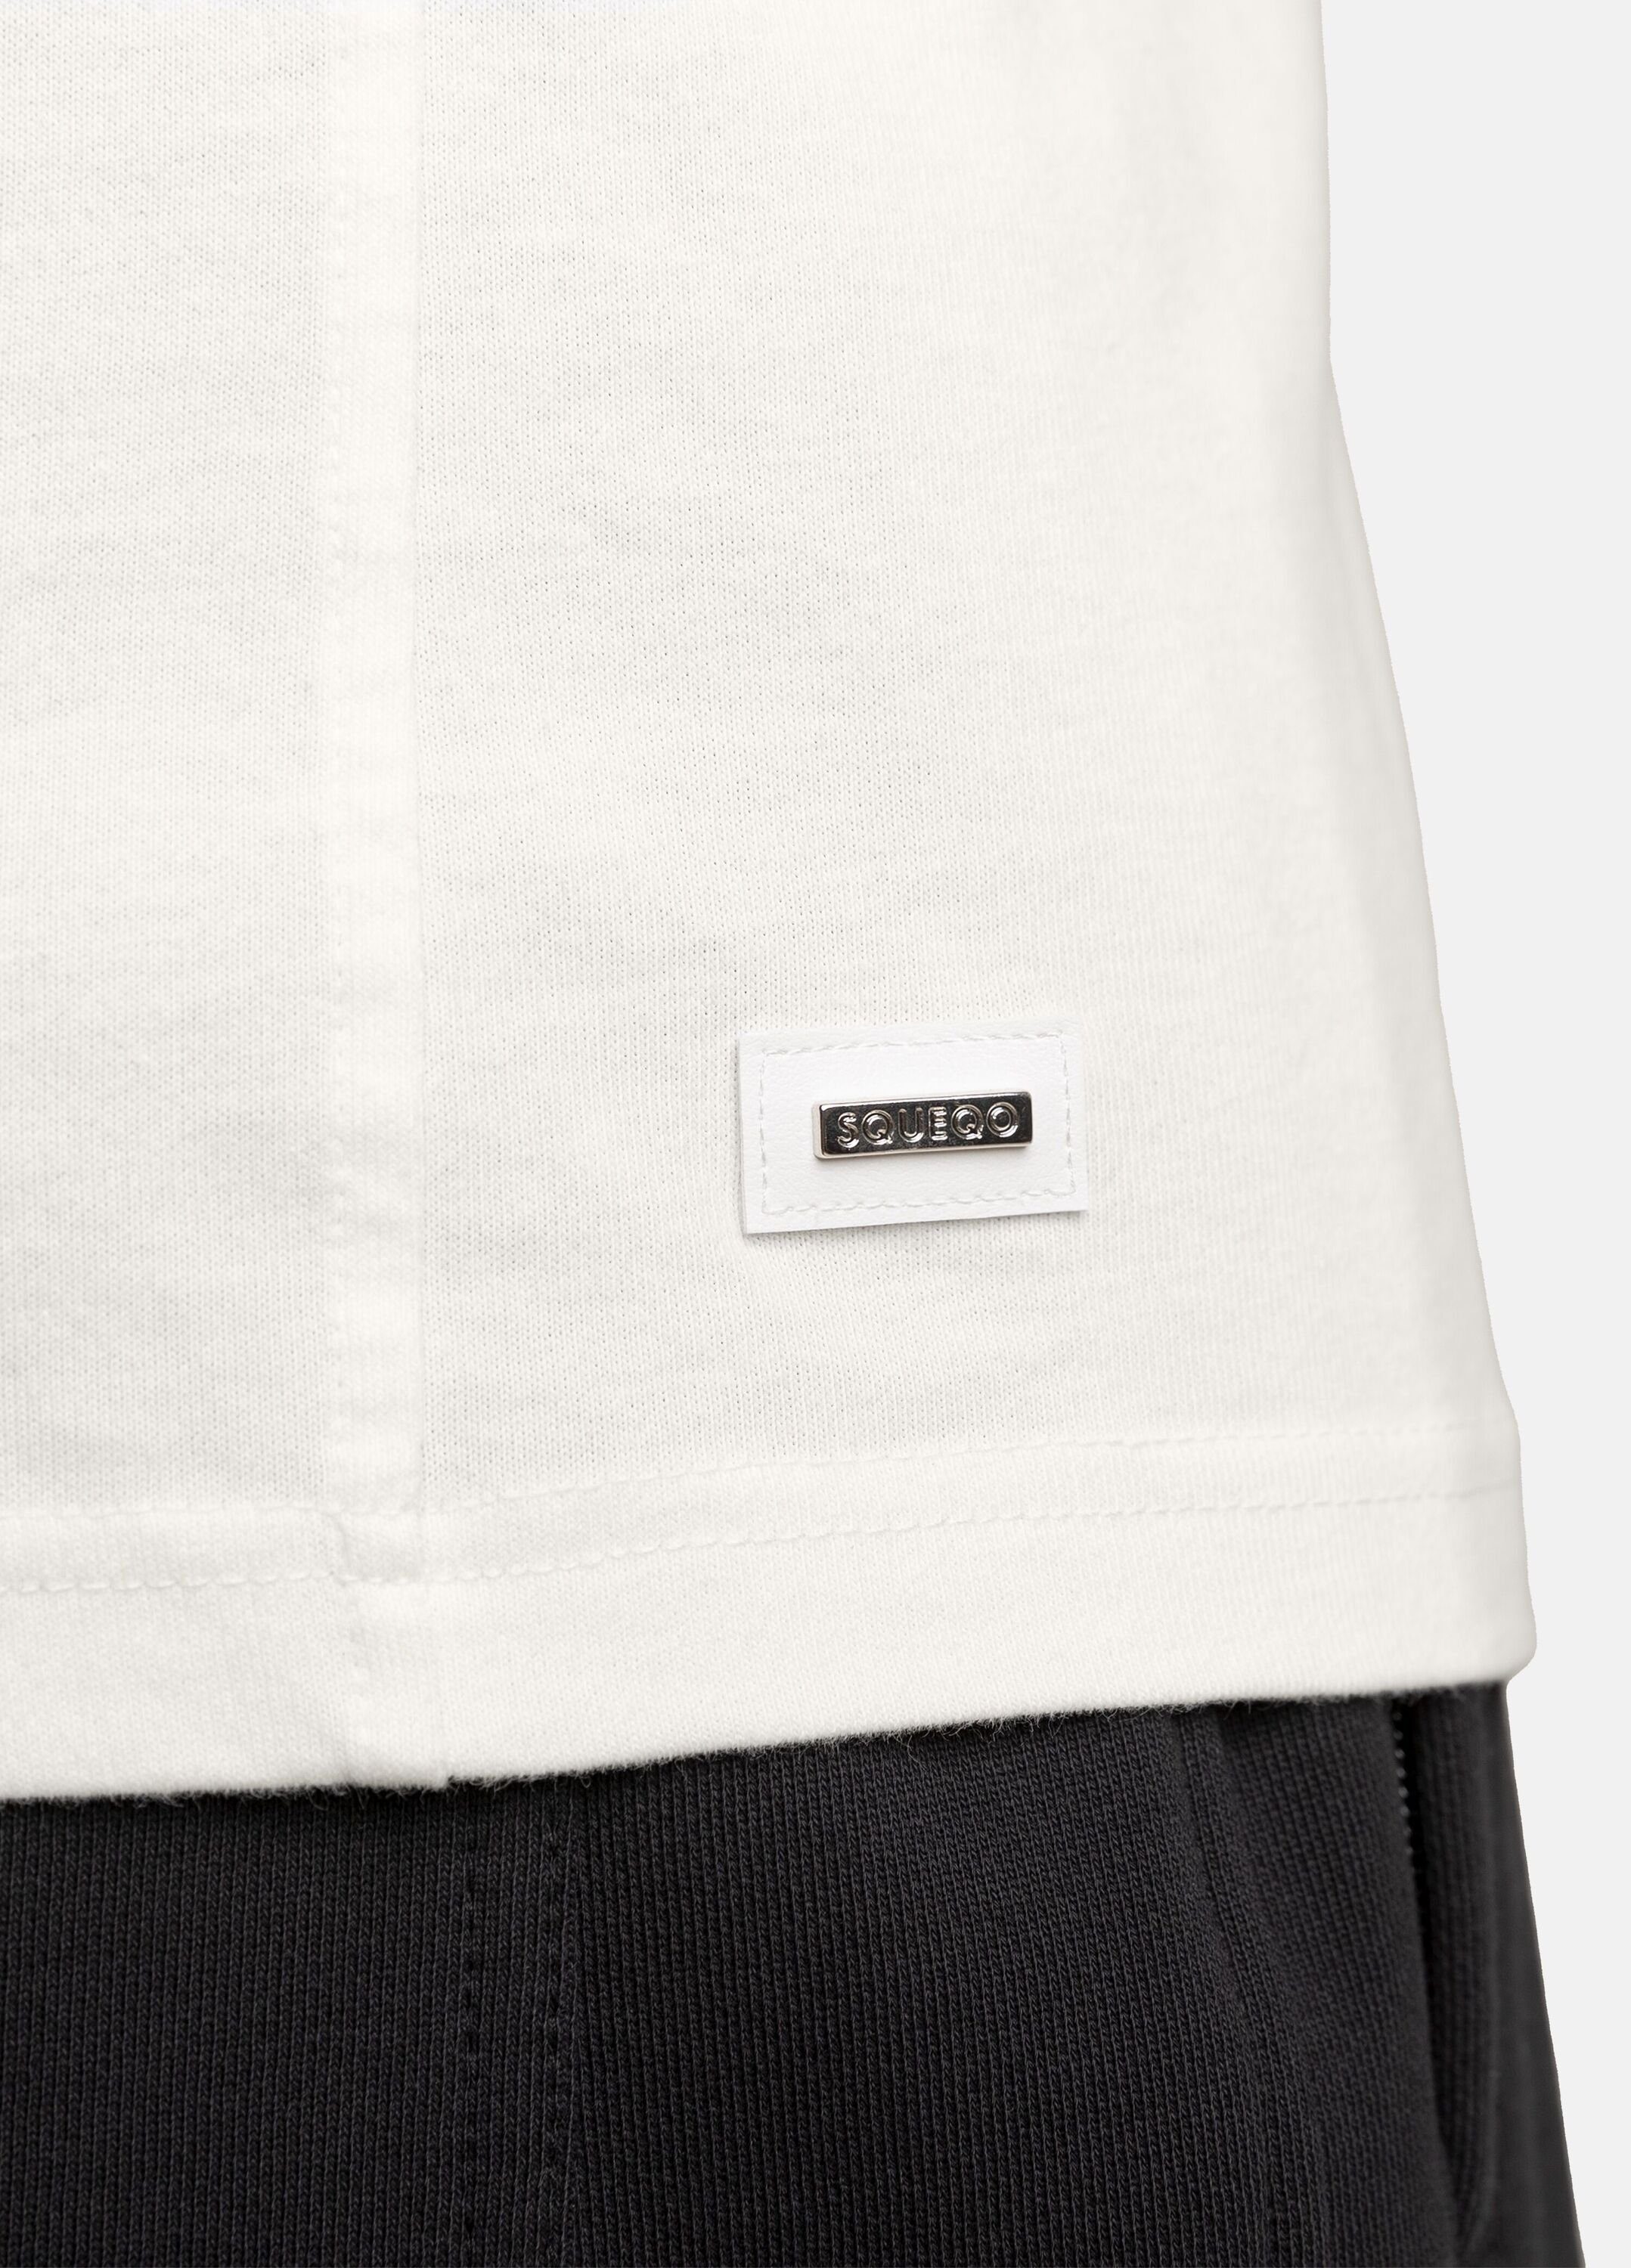 SQUEQO T-Shirt mit geripptem Rundhalsausschnitt White Off